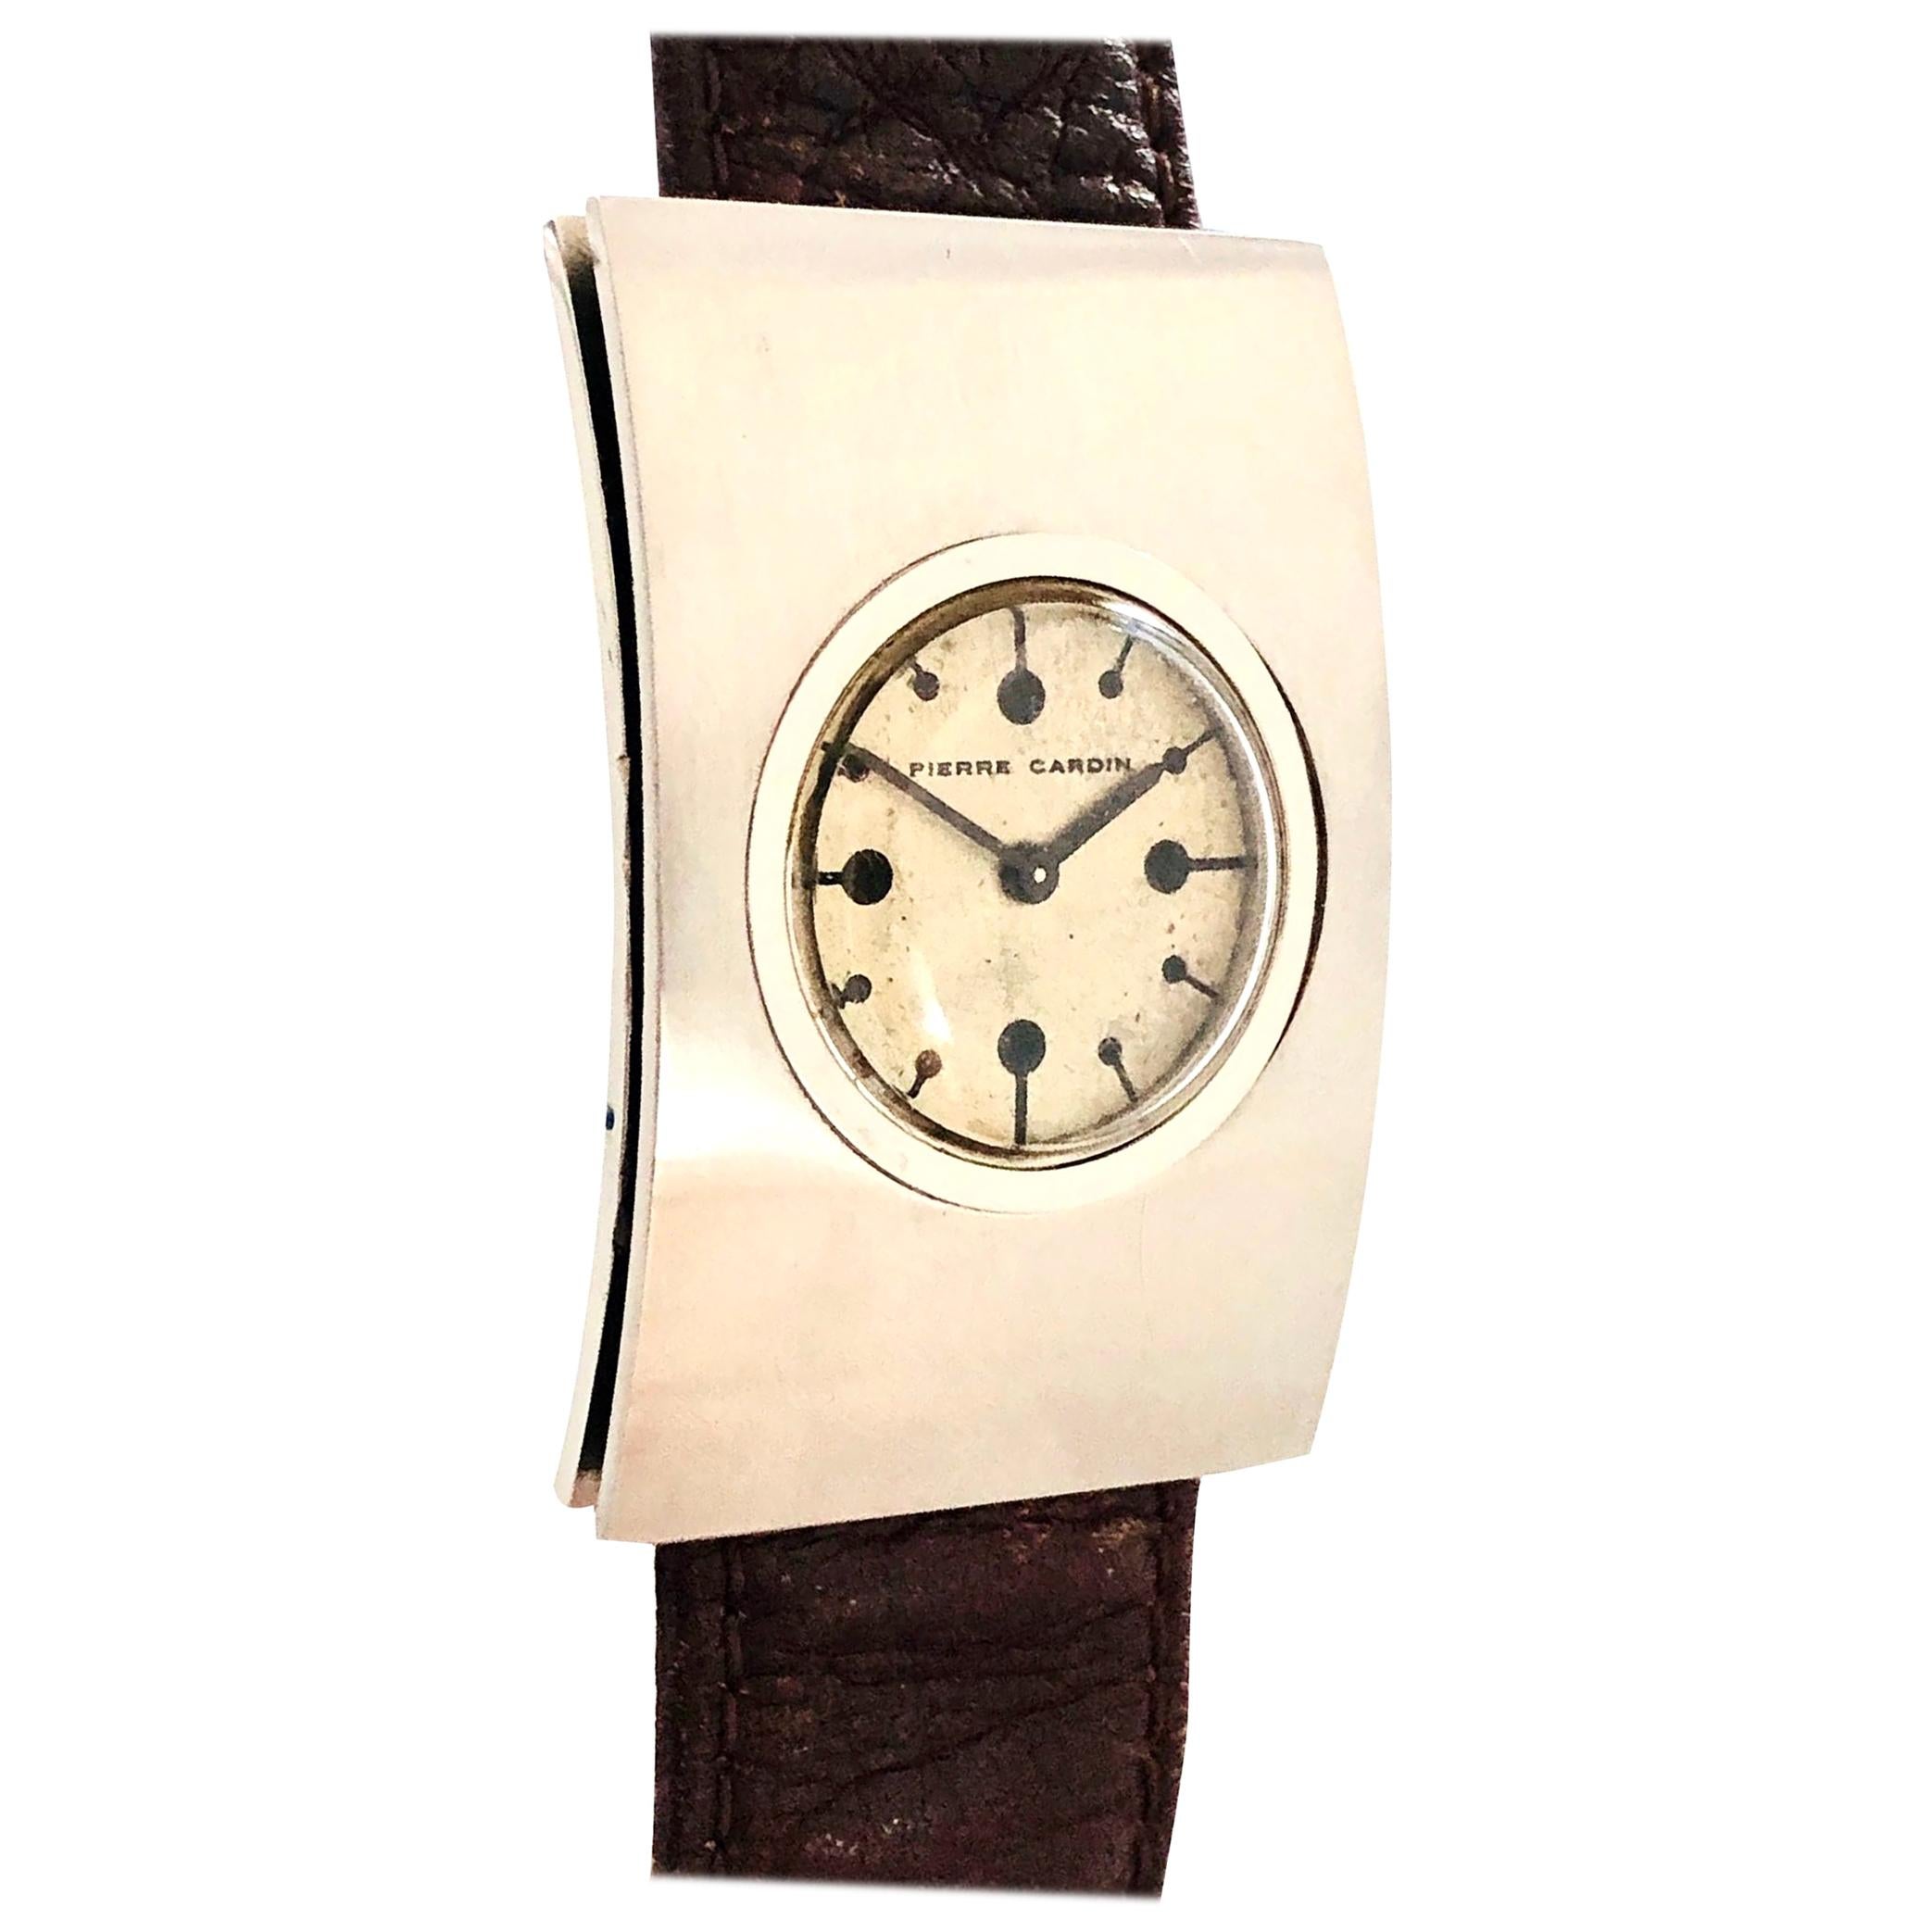 Pierre Cardin Jaeger - 3 For Sale on 1stDibs | pierre cardin jaeger watch